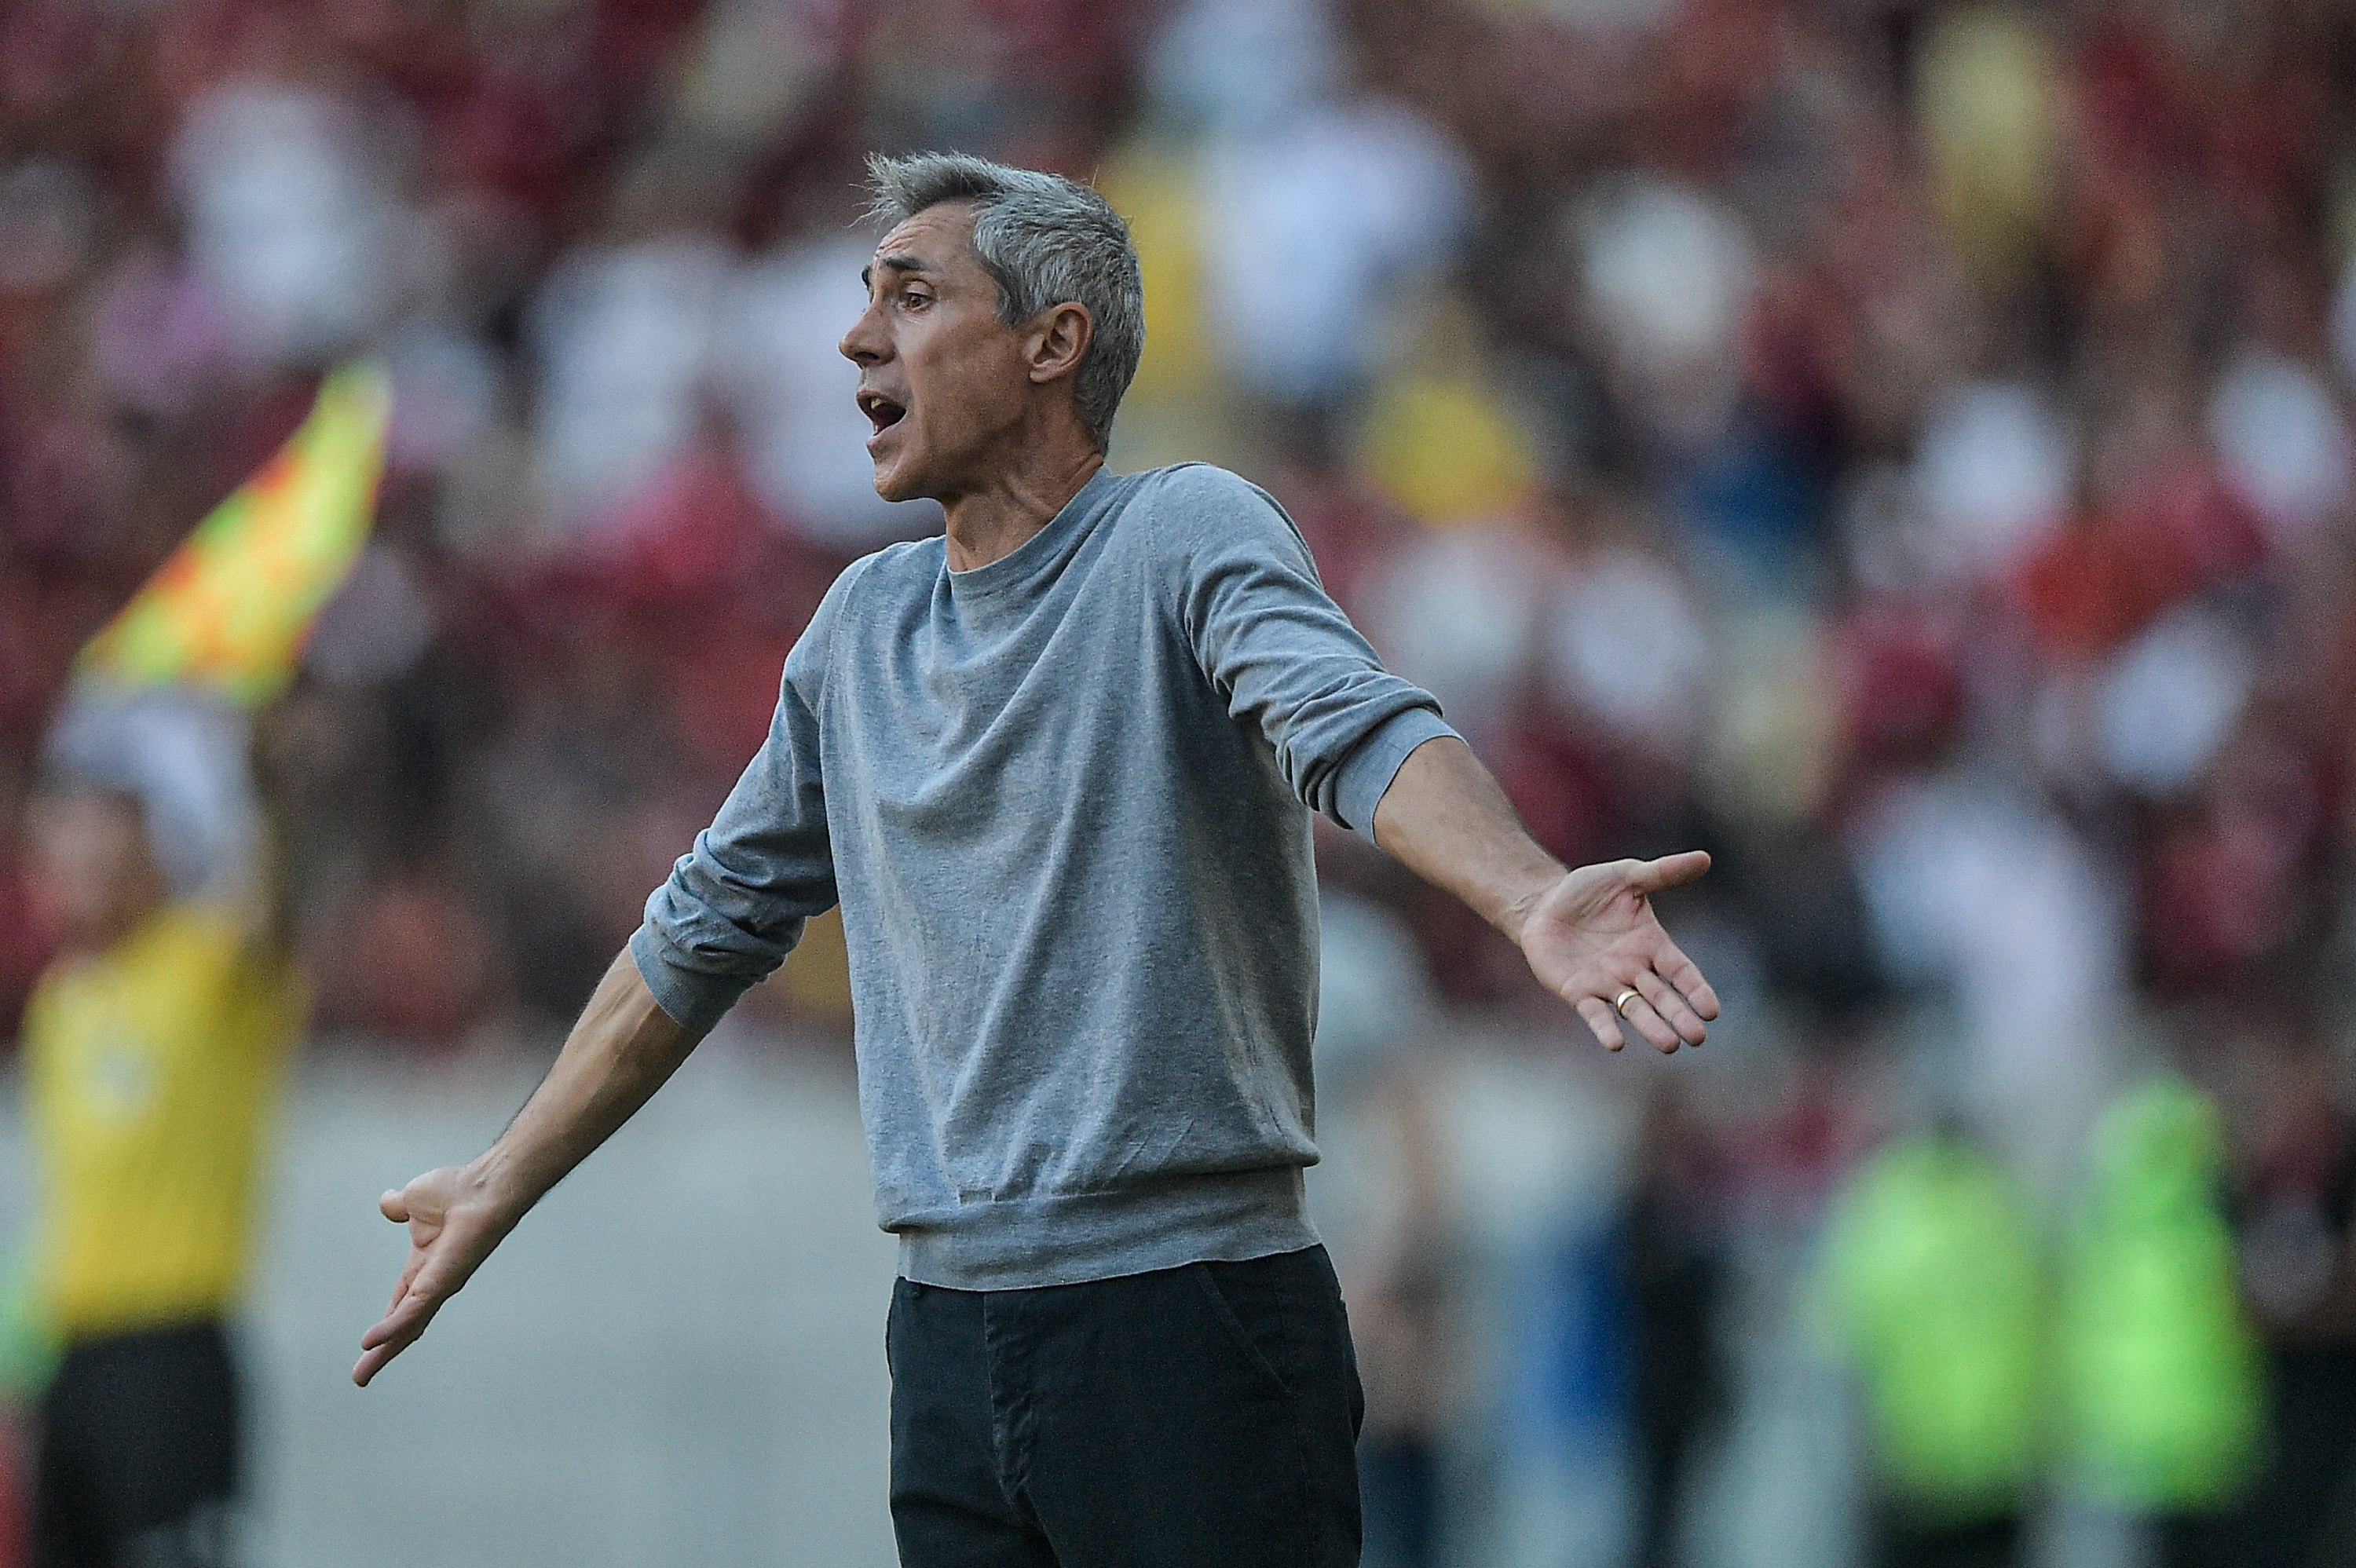 Ex-dirigente do Grêmio cita Dorival Jr, parabeniza São Paulo e cutuca  Flamengo